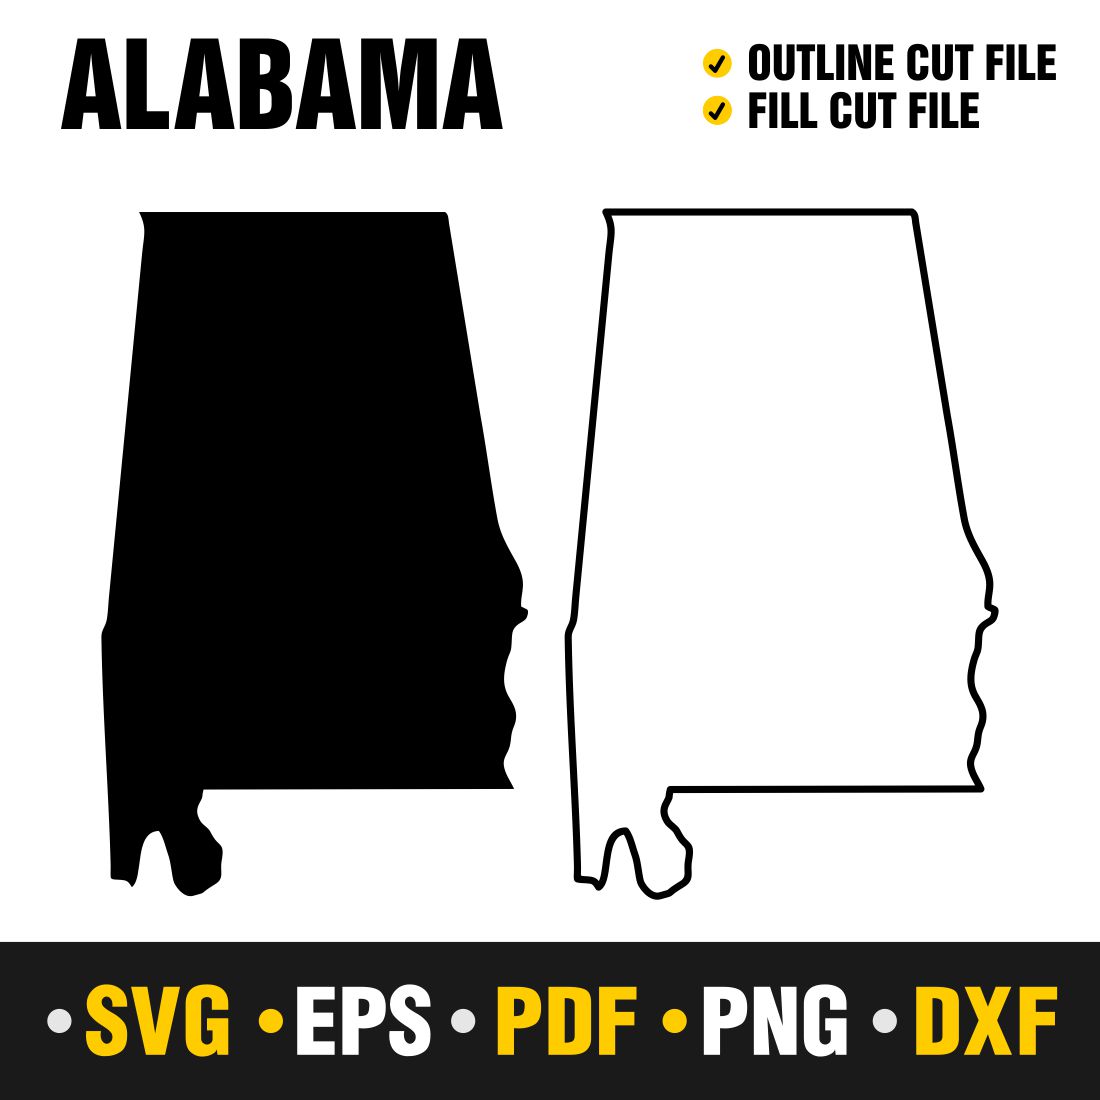 Alabama SVG, PNG, PDF, EPS & DXF cover image.